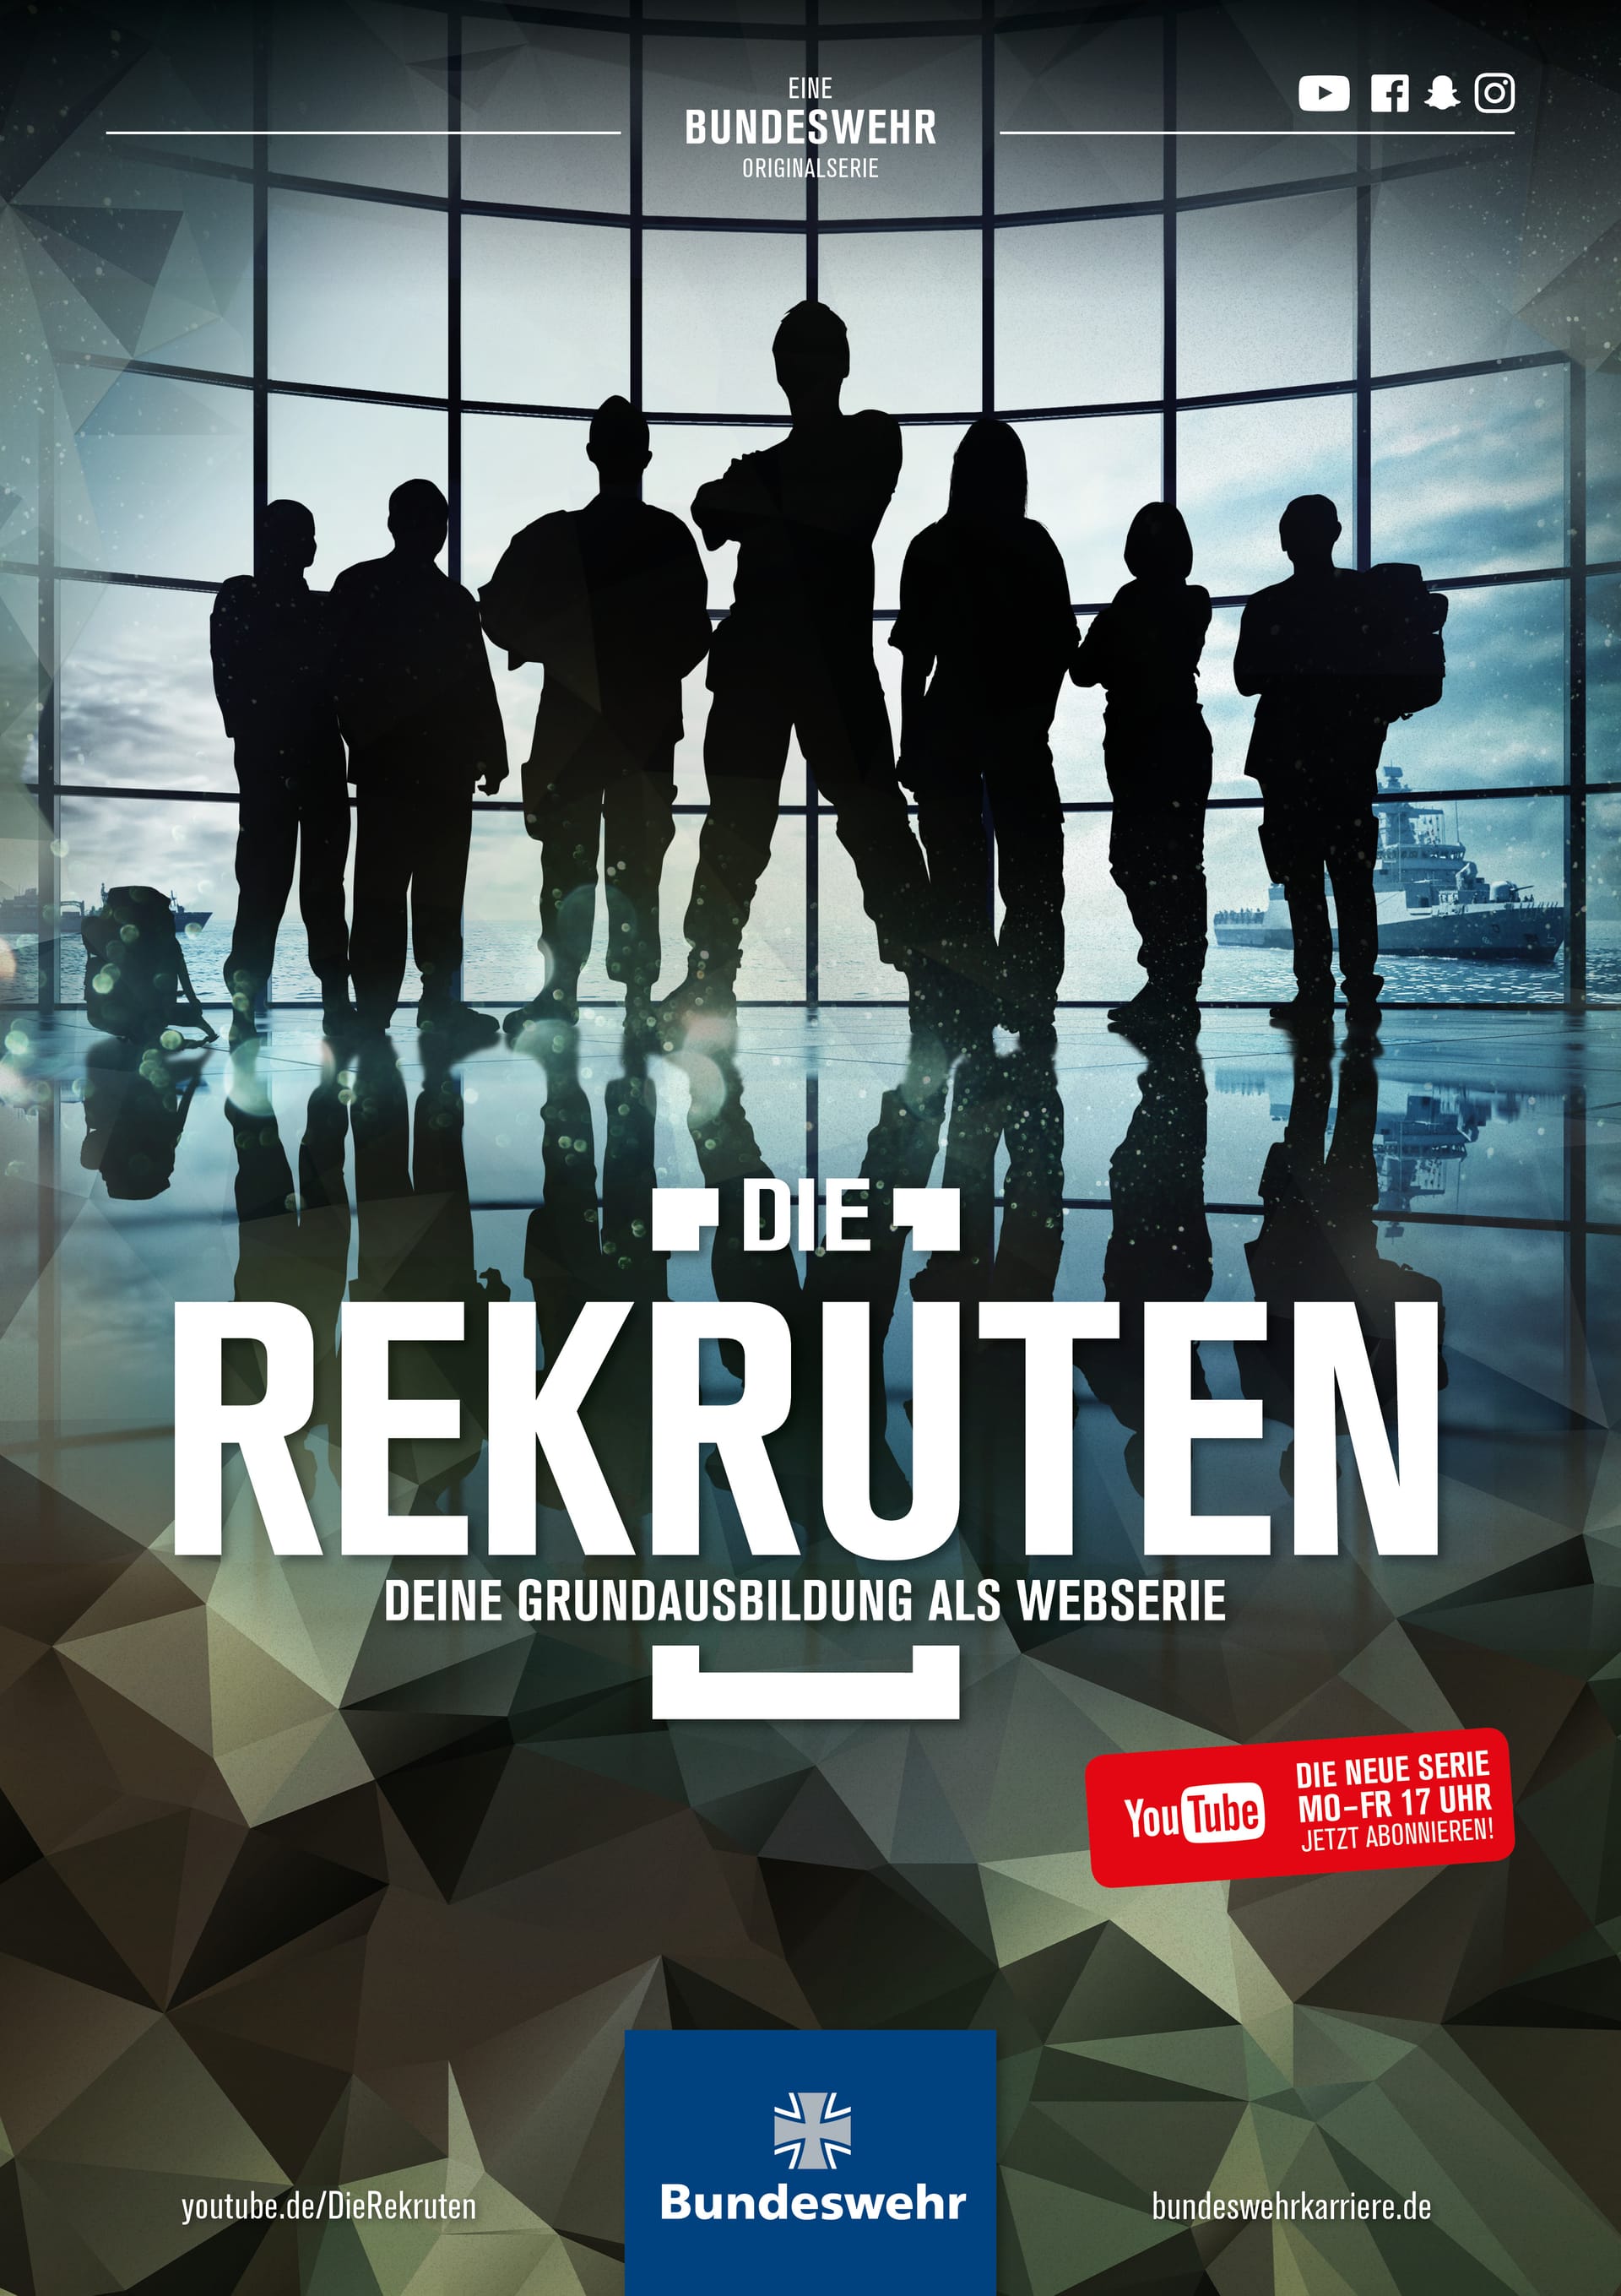 Mit diesem Plakat wirbt die Bundeswehr um junge Menschen.